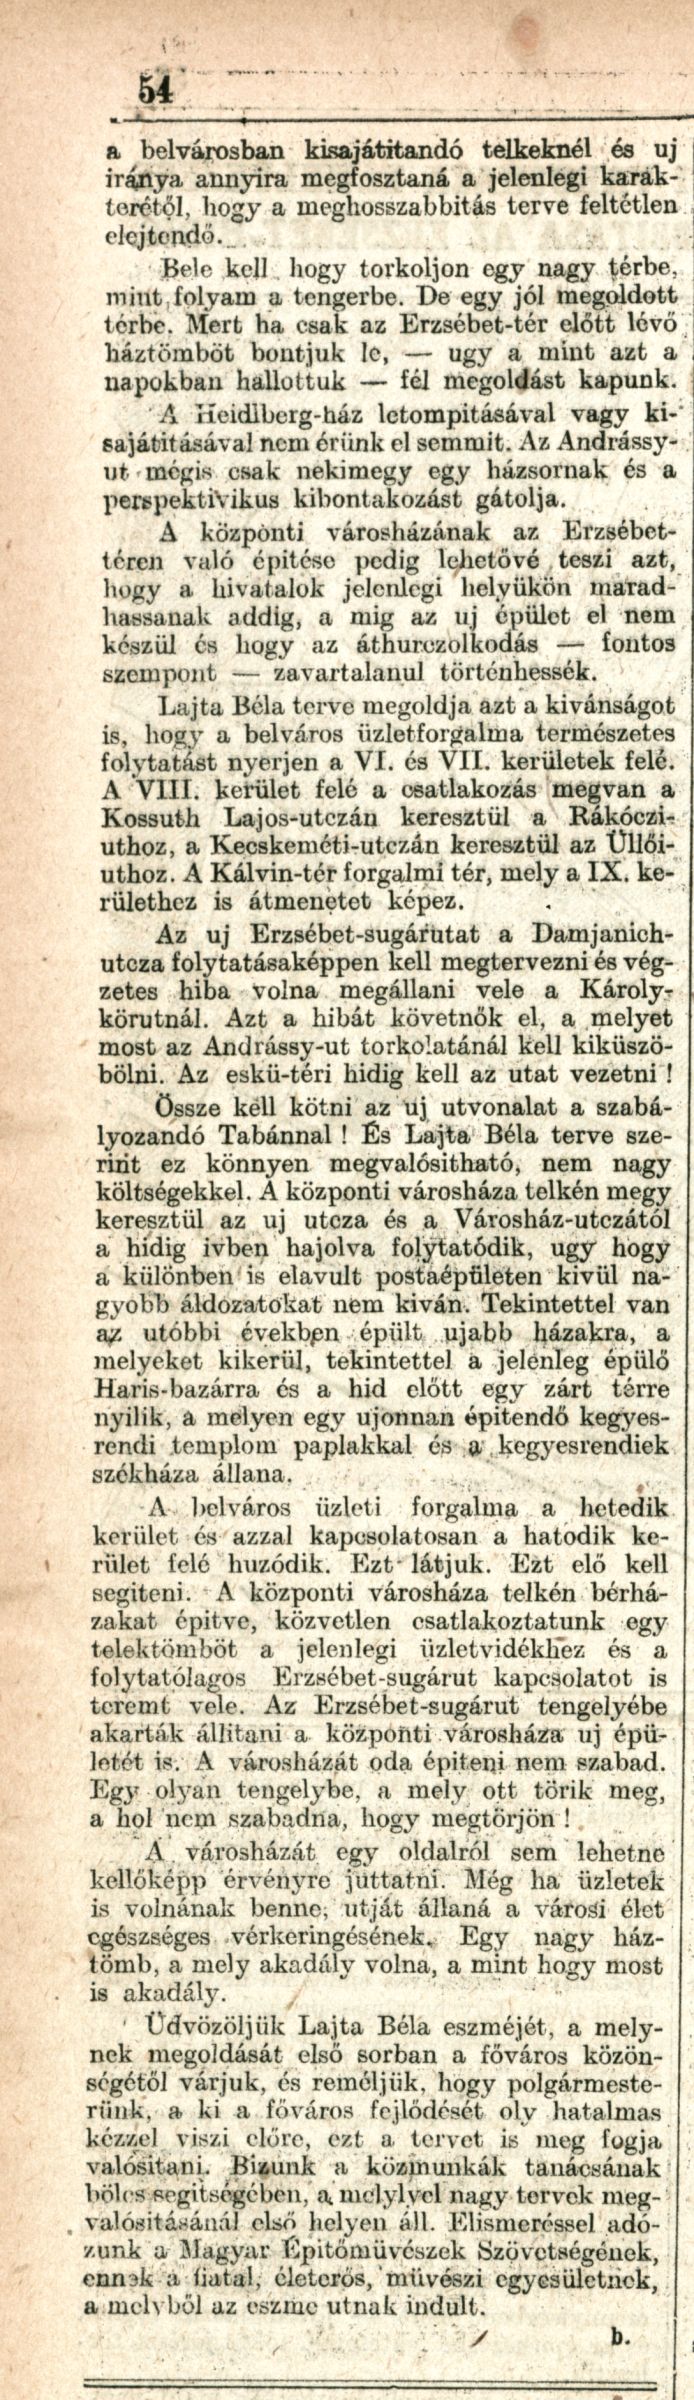 Az Újság, 1910. XI. 13. 54. p.